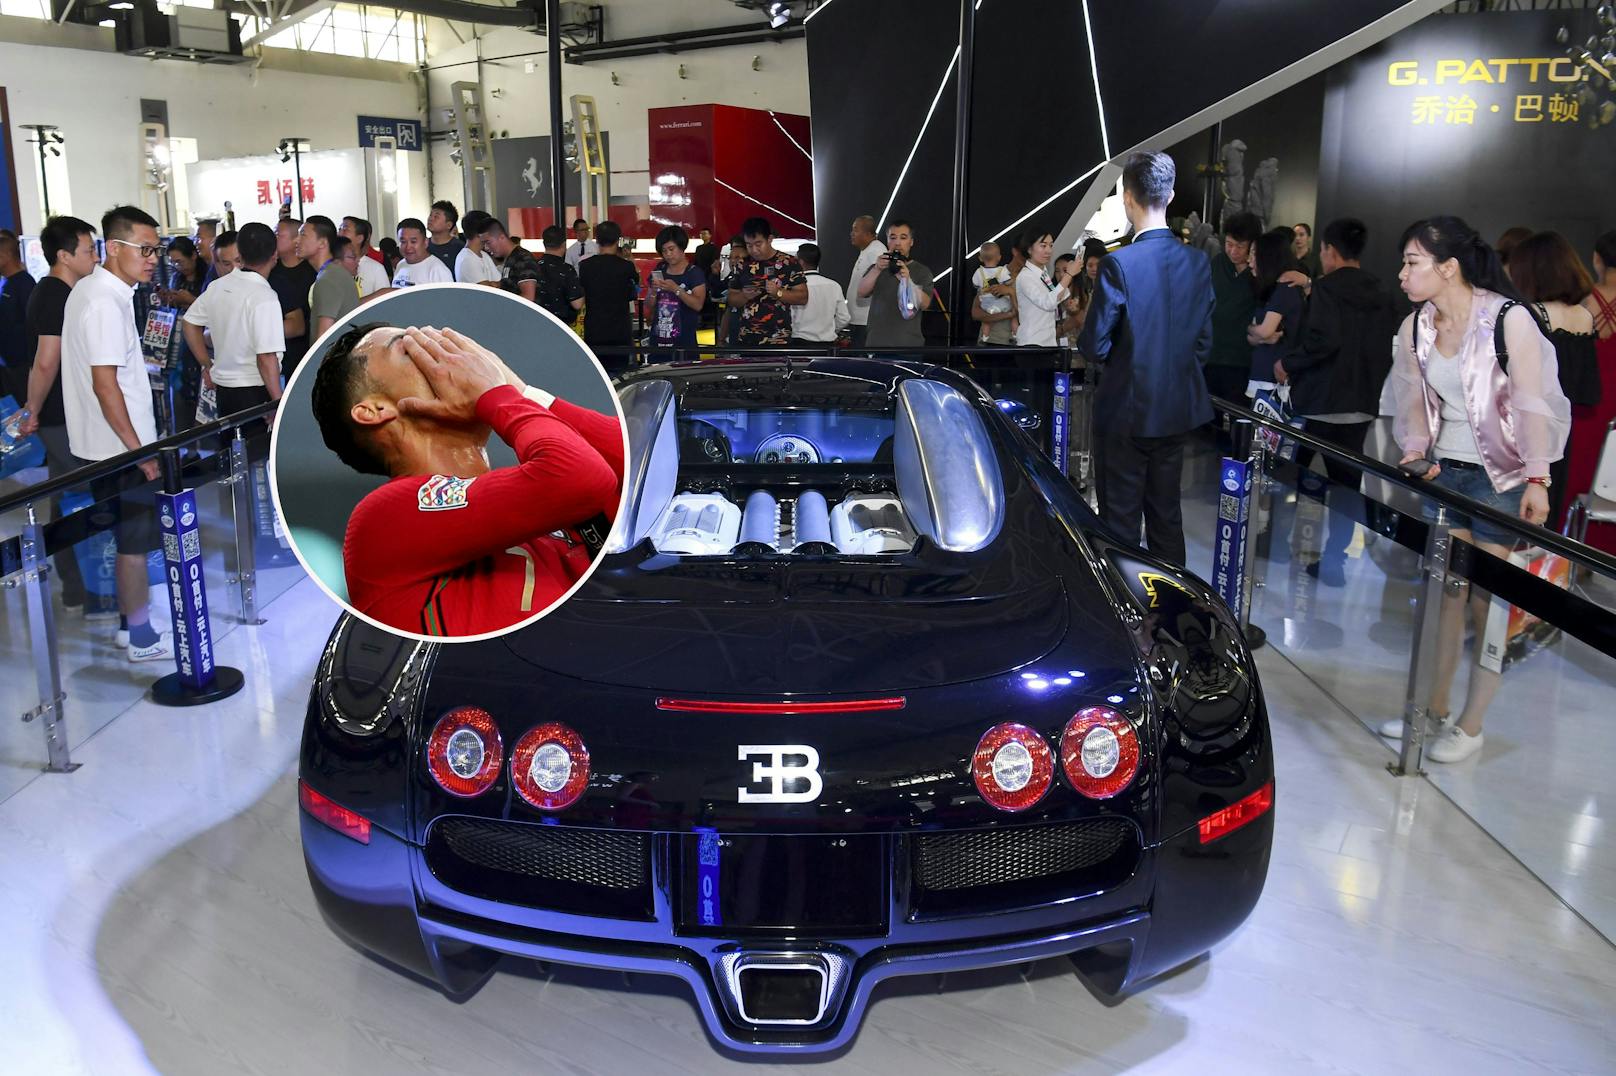 Bugatti von Ronaldo bei Crash auf Mallorca geschrottet